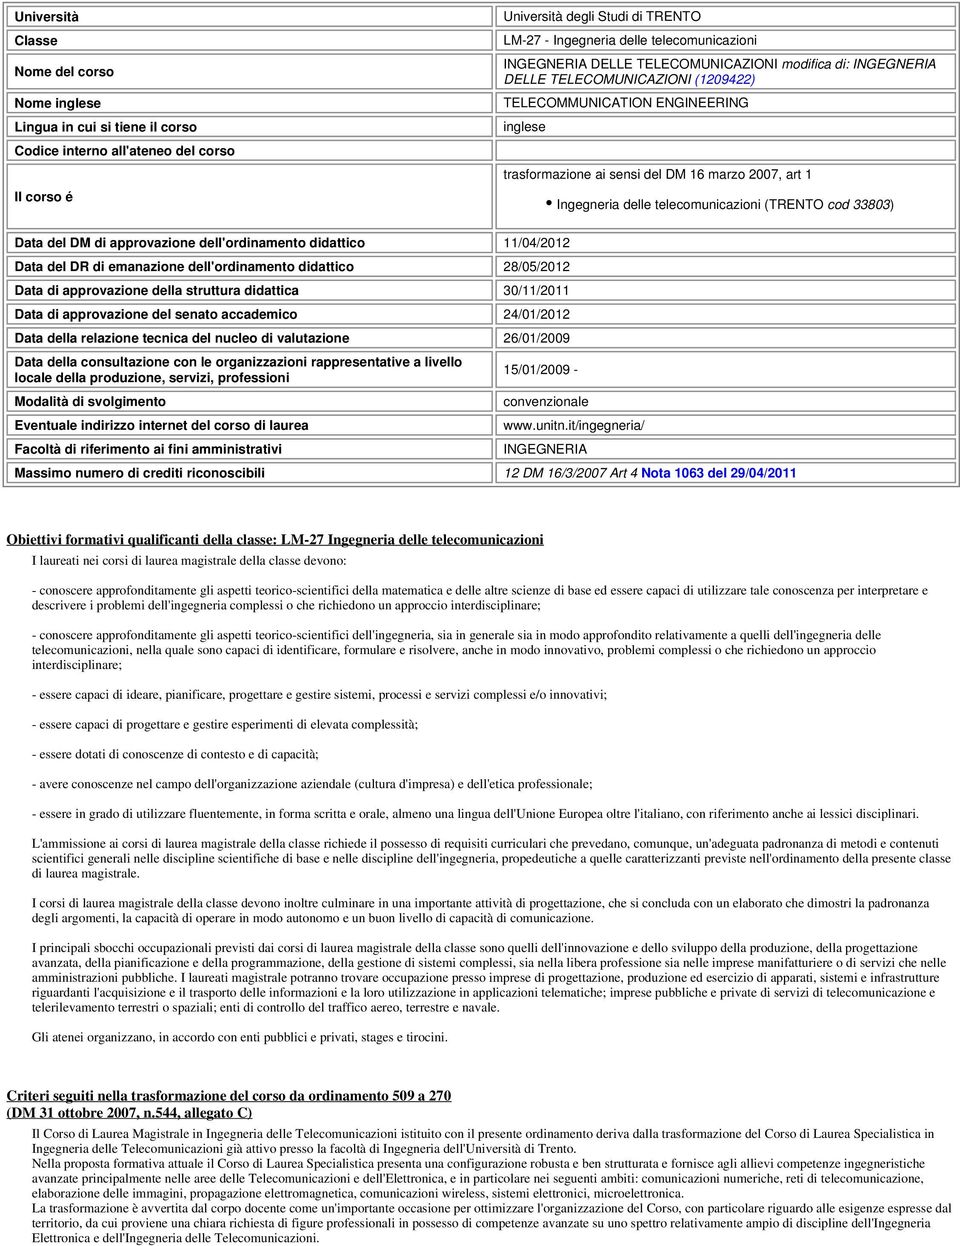 1 Ingegneria delle telecomunicazioni (TRENTO cod 33803) Data del DM di approvazione dell'ordinamento didattico 11/04/2012 Data del DR di emanazione dell'ordinamento didattico 28/05/2012 Data di